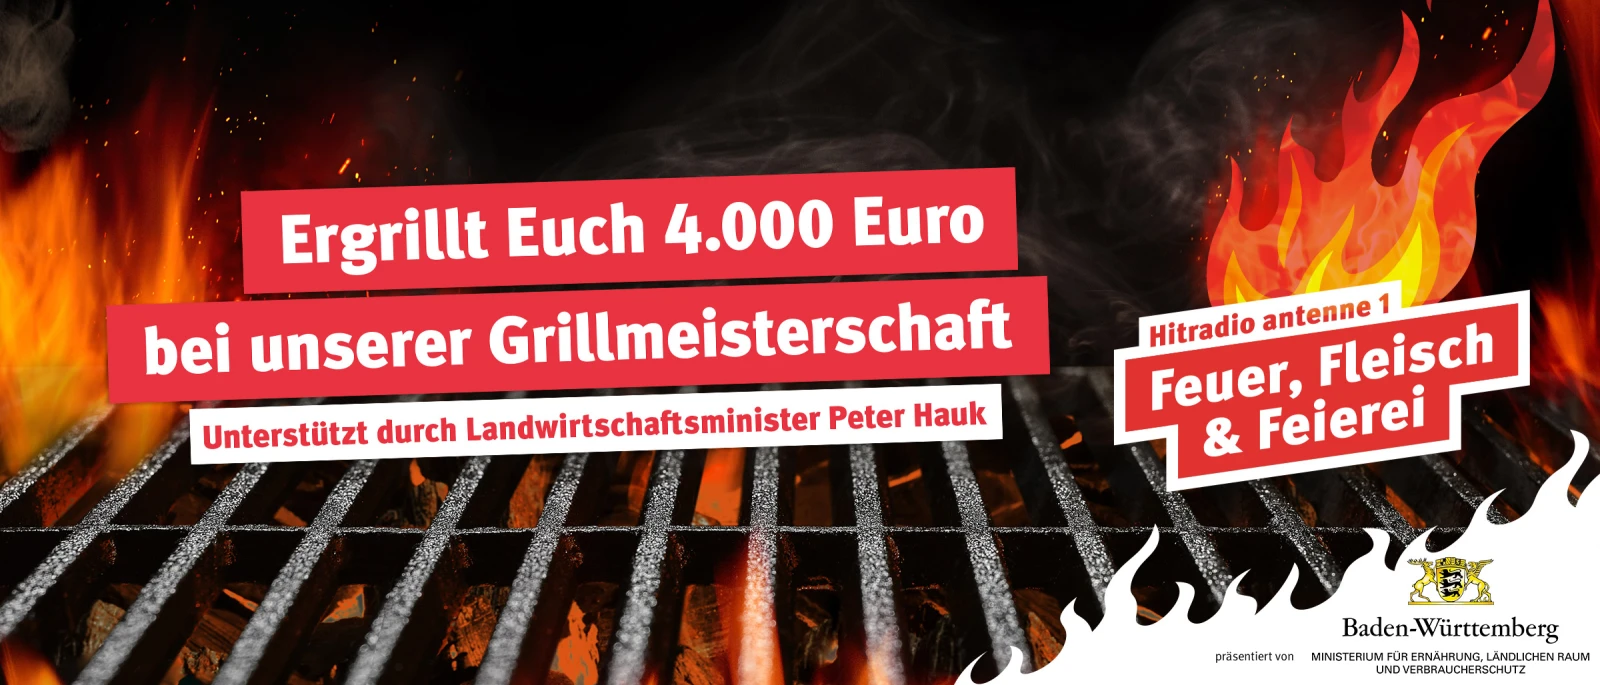 Feuer, Fleisch & Feierei! 4.000 Euro für Euer Sommerfest.